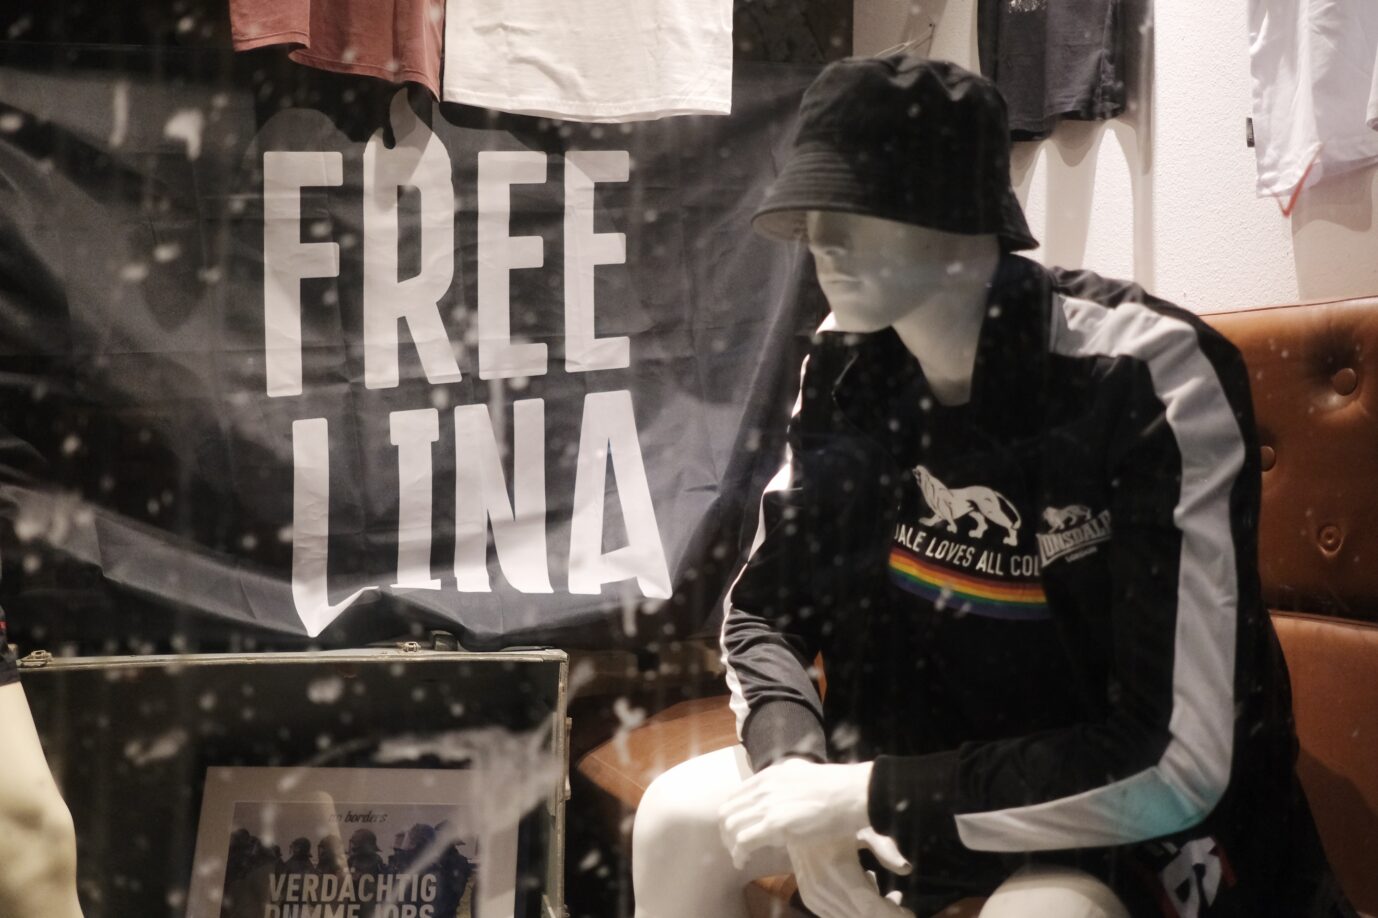 Das Bild zeigt ein Solidaritäts-Transparent mit der verurteilten Gewalttäterin Lina E.